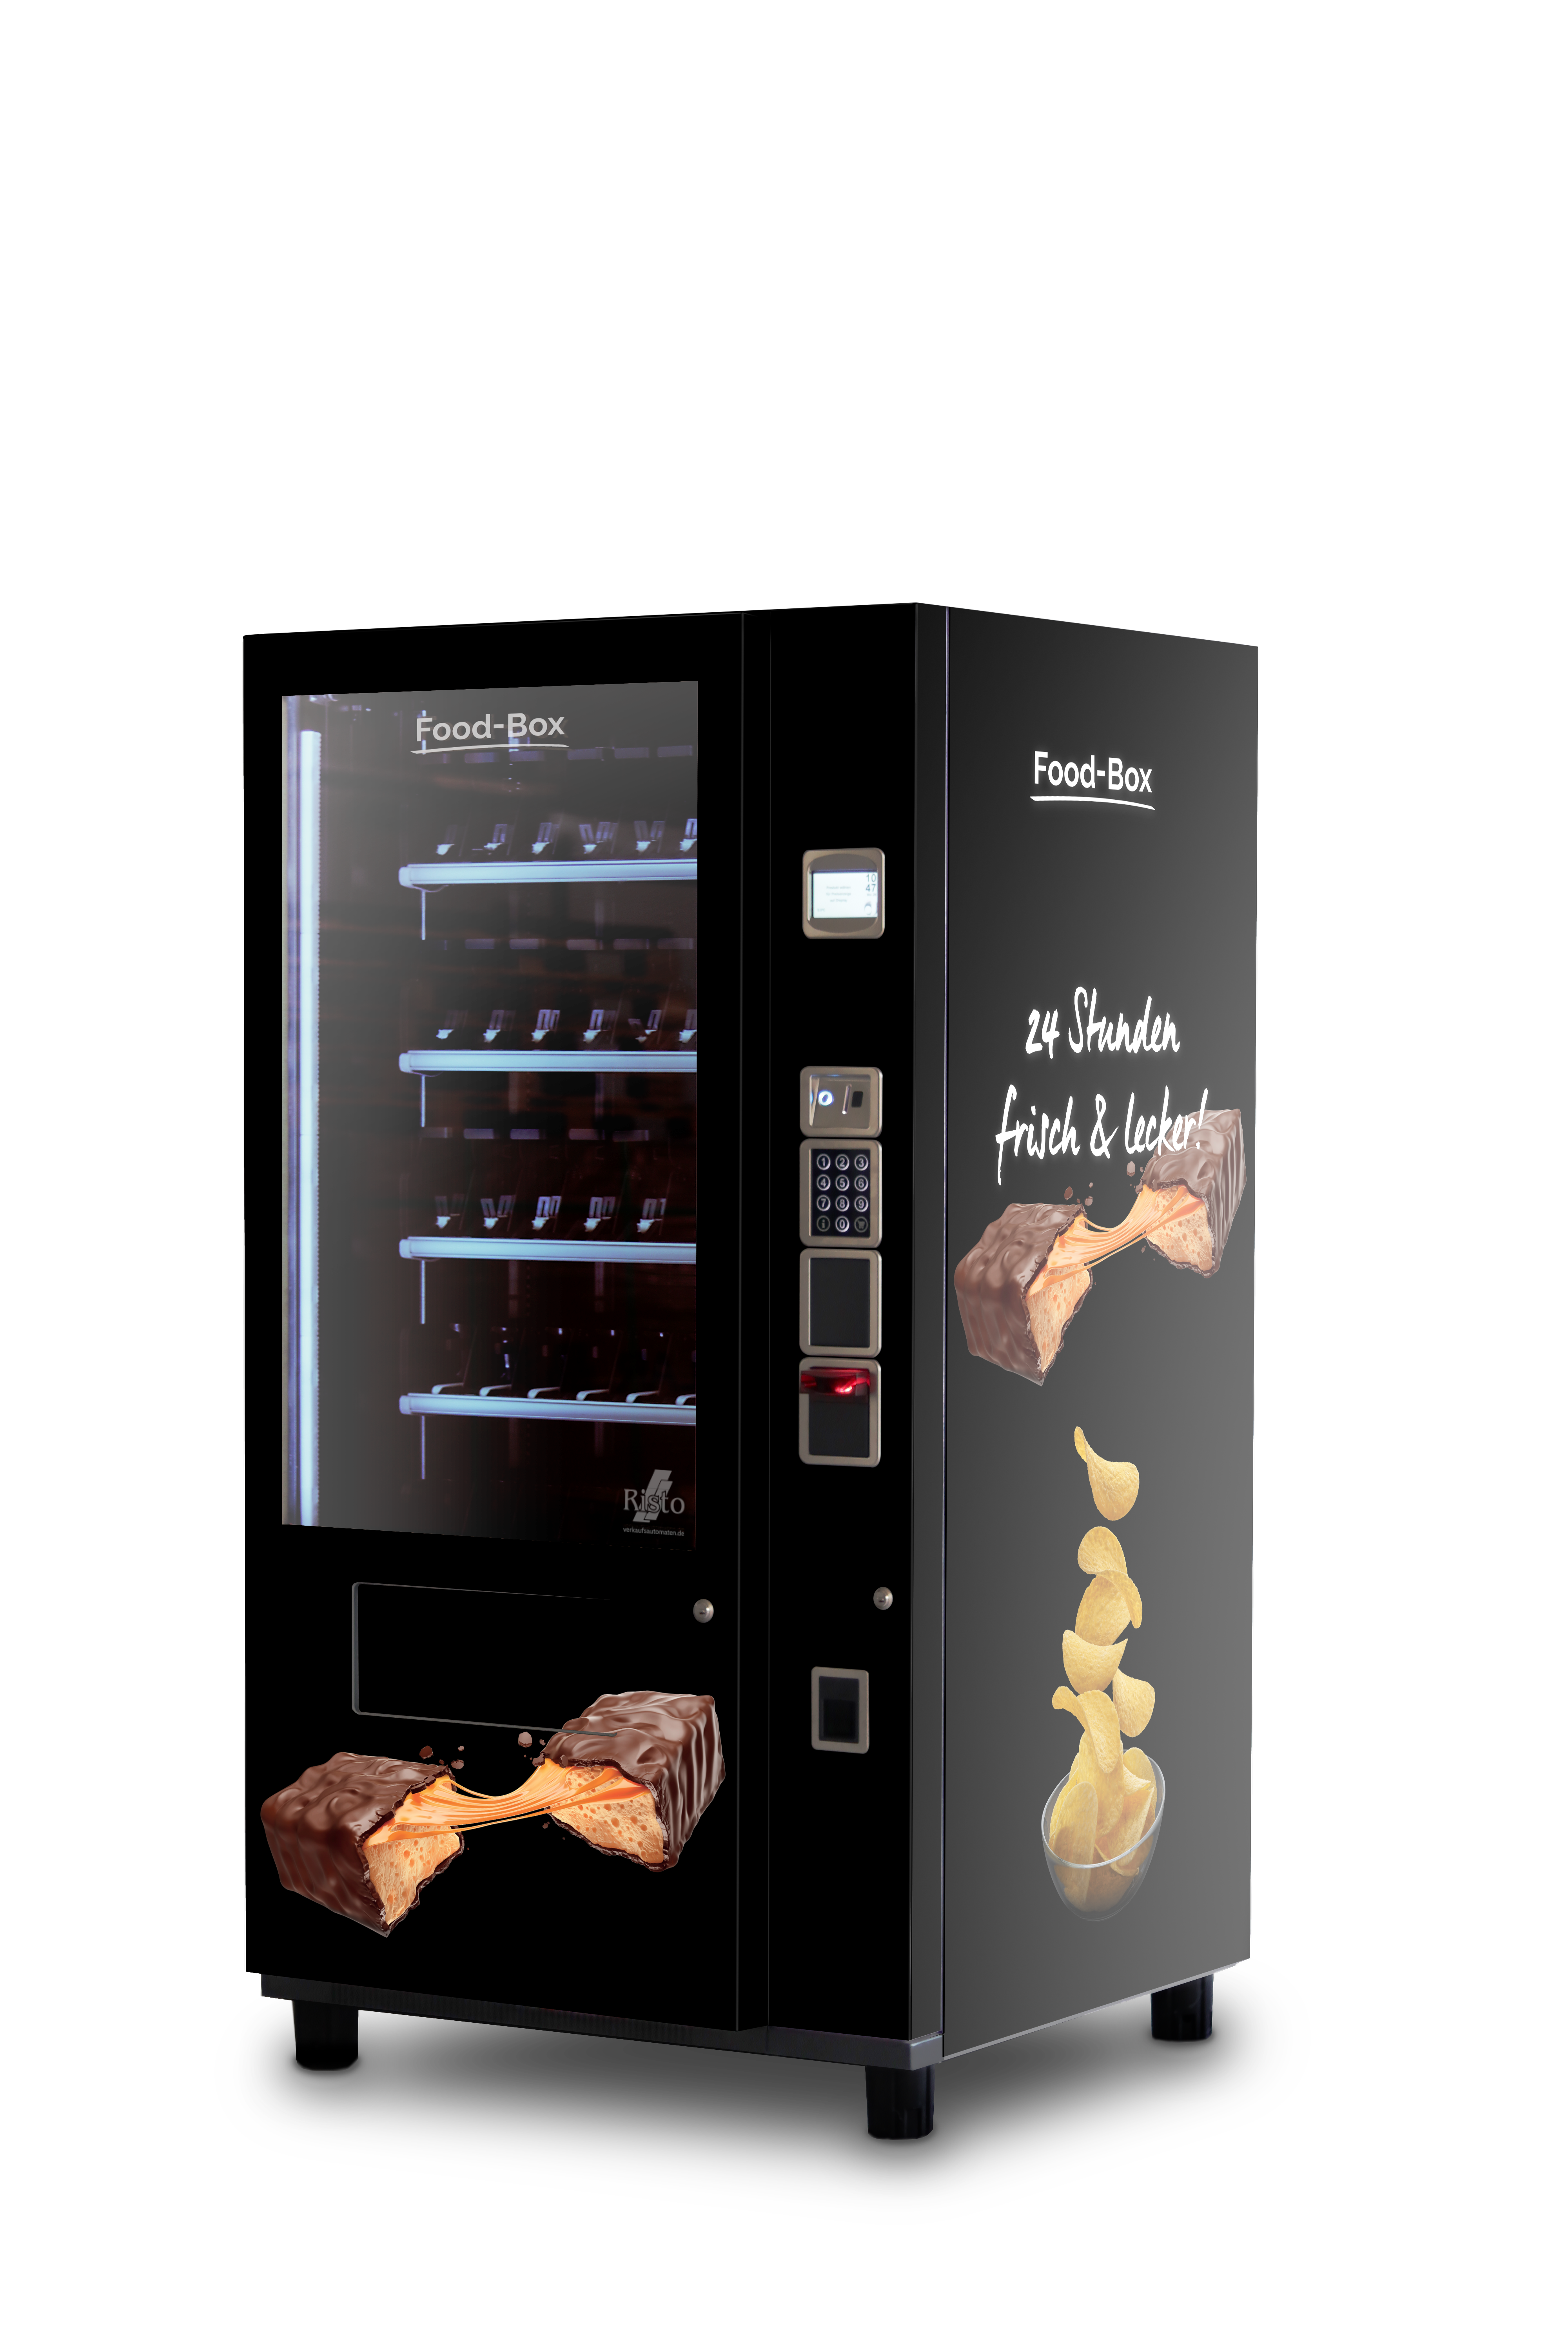 Verkaufsautomat für Süßigkeiten Snackautomat